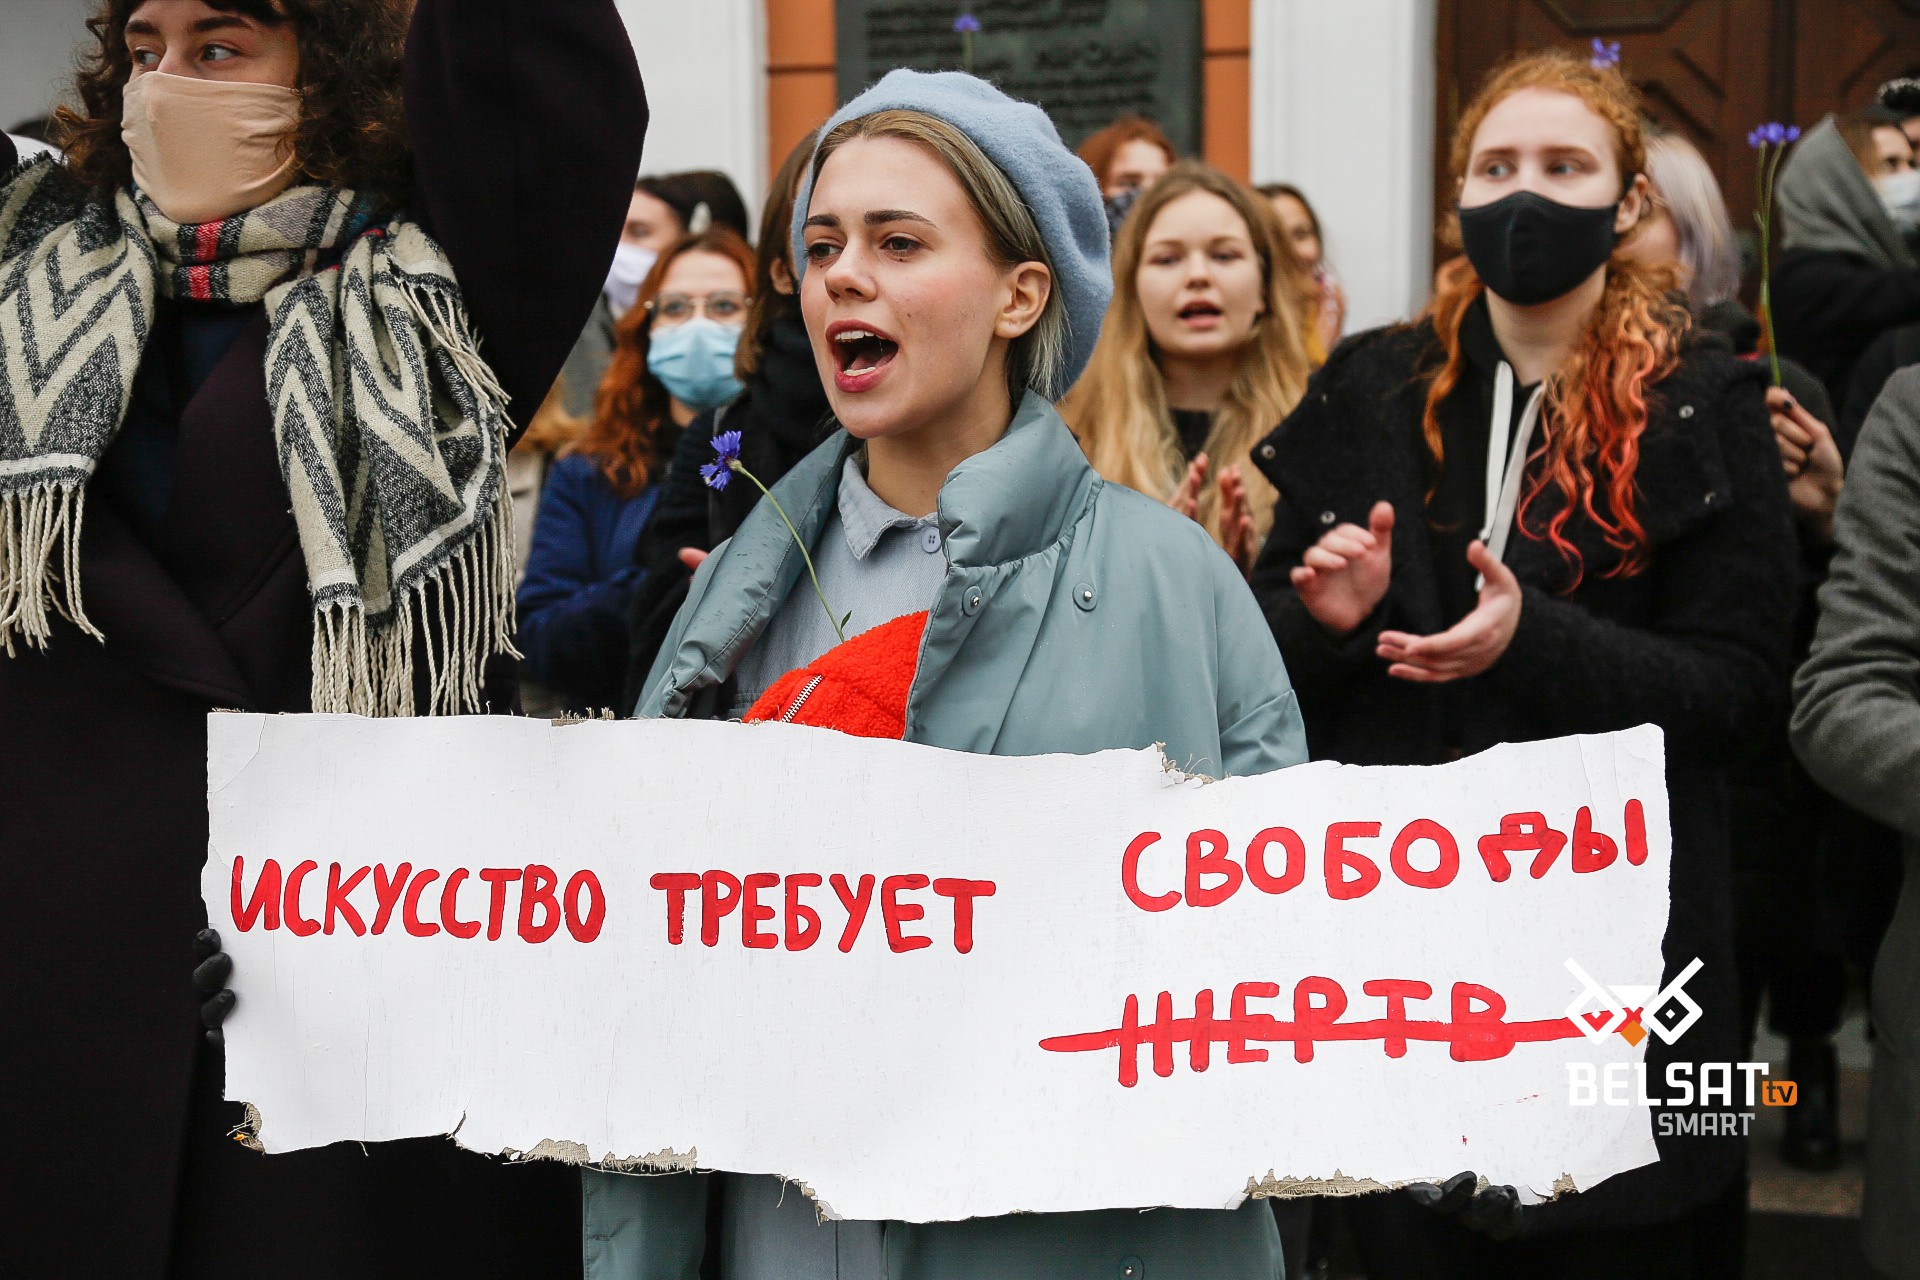 Душили, угрожали изнасиловать, называли шлюхами НЕХТЫ»: как силовики  запугивали несовершеннолетних студенток - belsat.eu